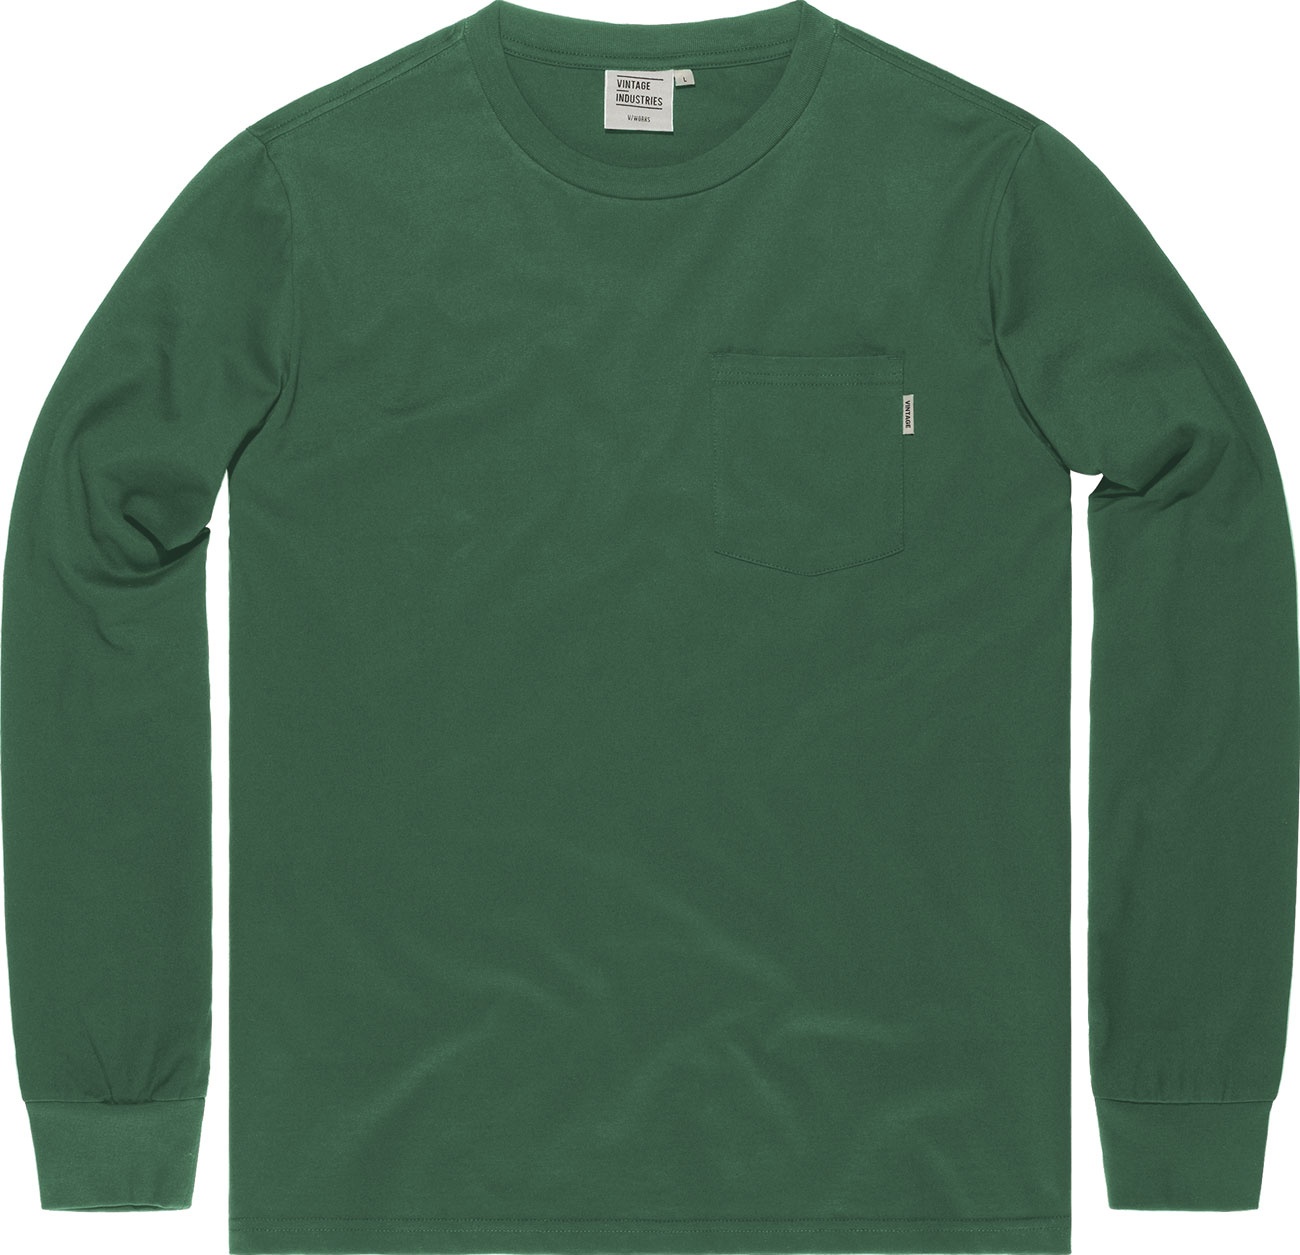 Vintage Industries Grant, t-shirt manches longues - Vert - L